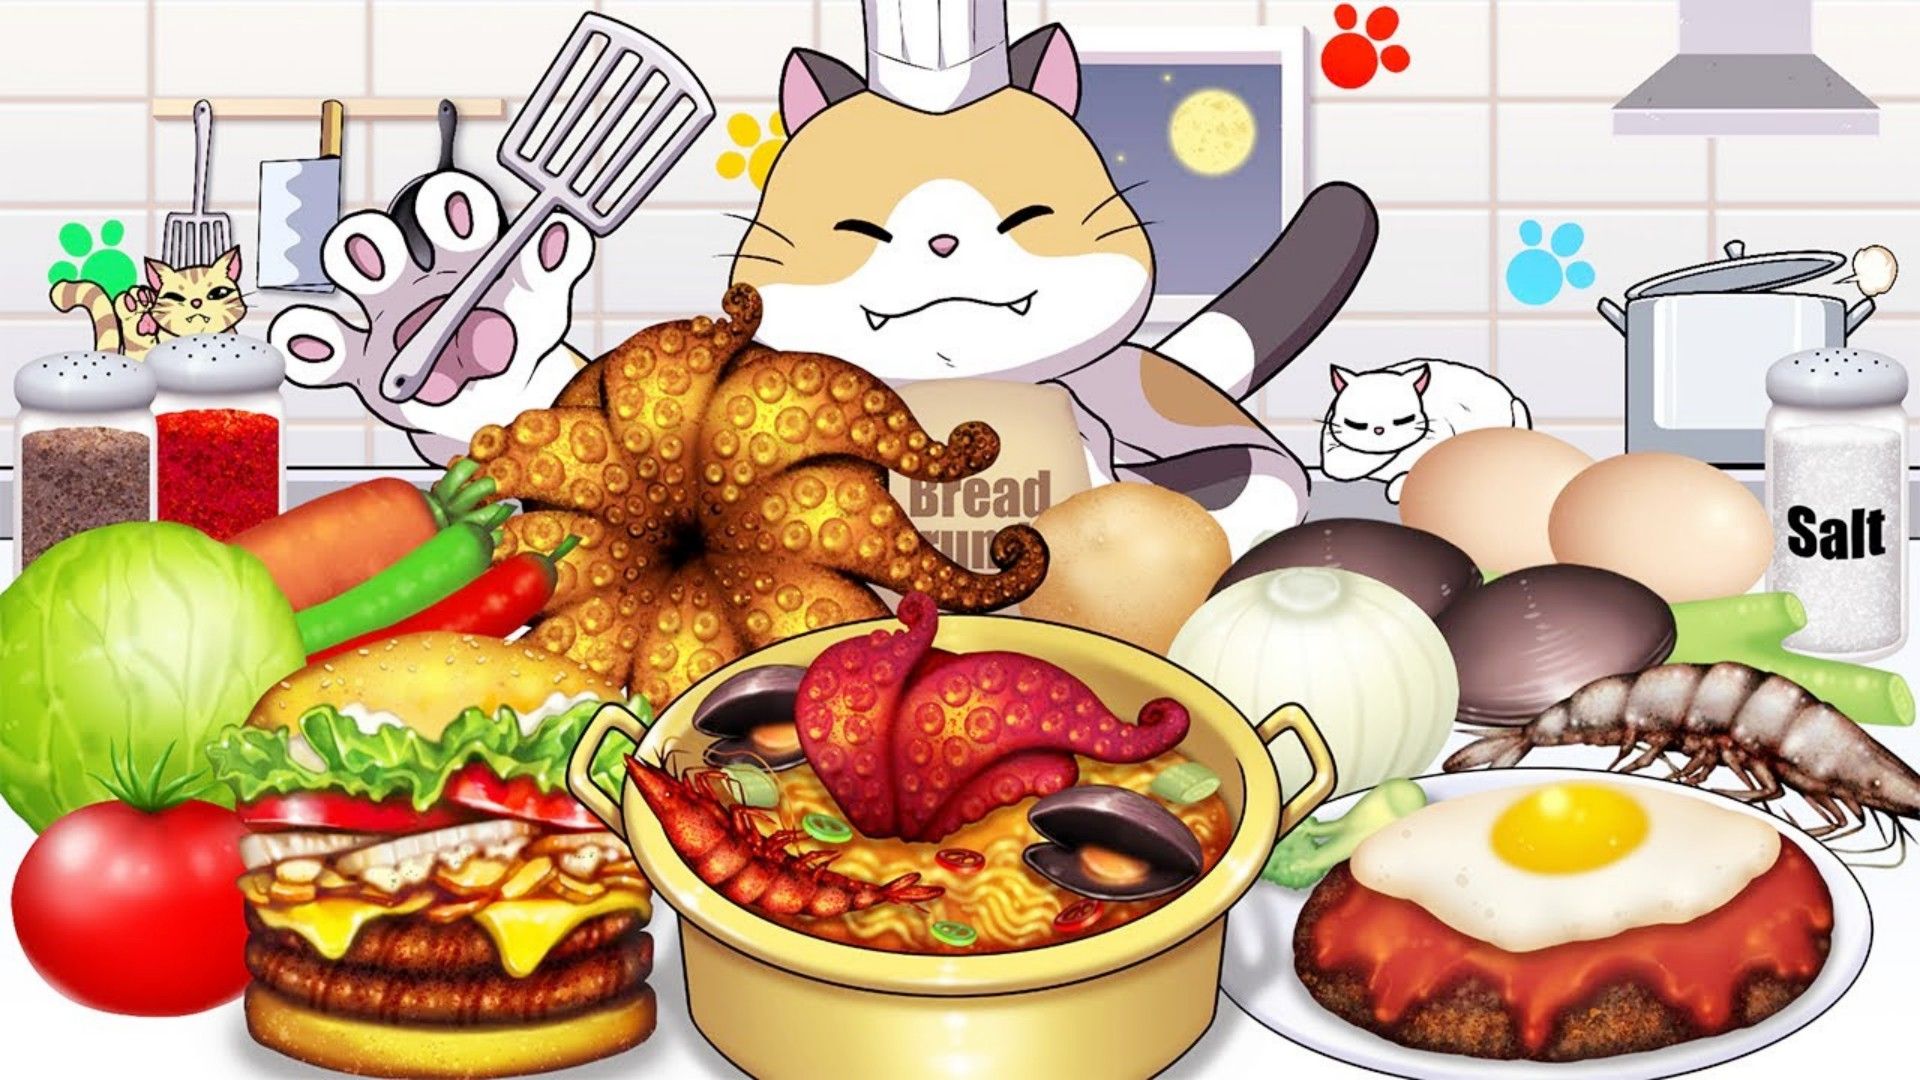 美食动画:料理猫王的厨房烹饪挑战,展示惊人的花式制作方法!